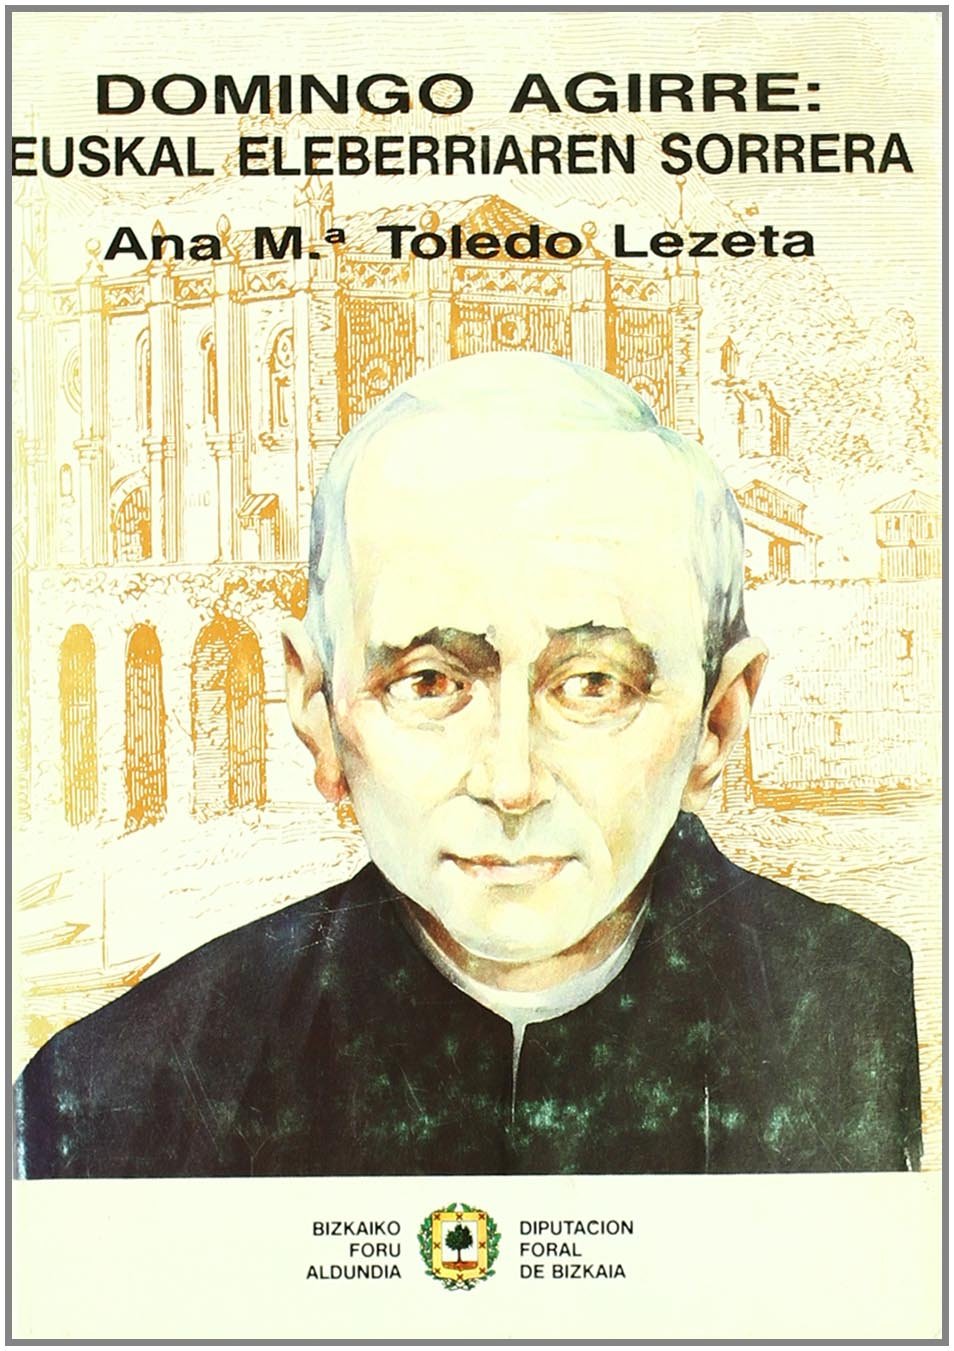 Imagen de portada del libro Domingo Agirre